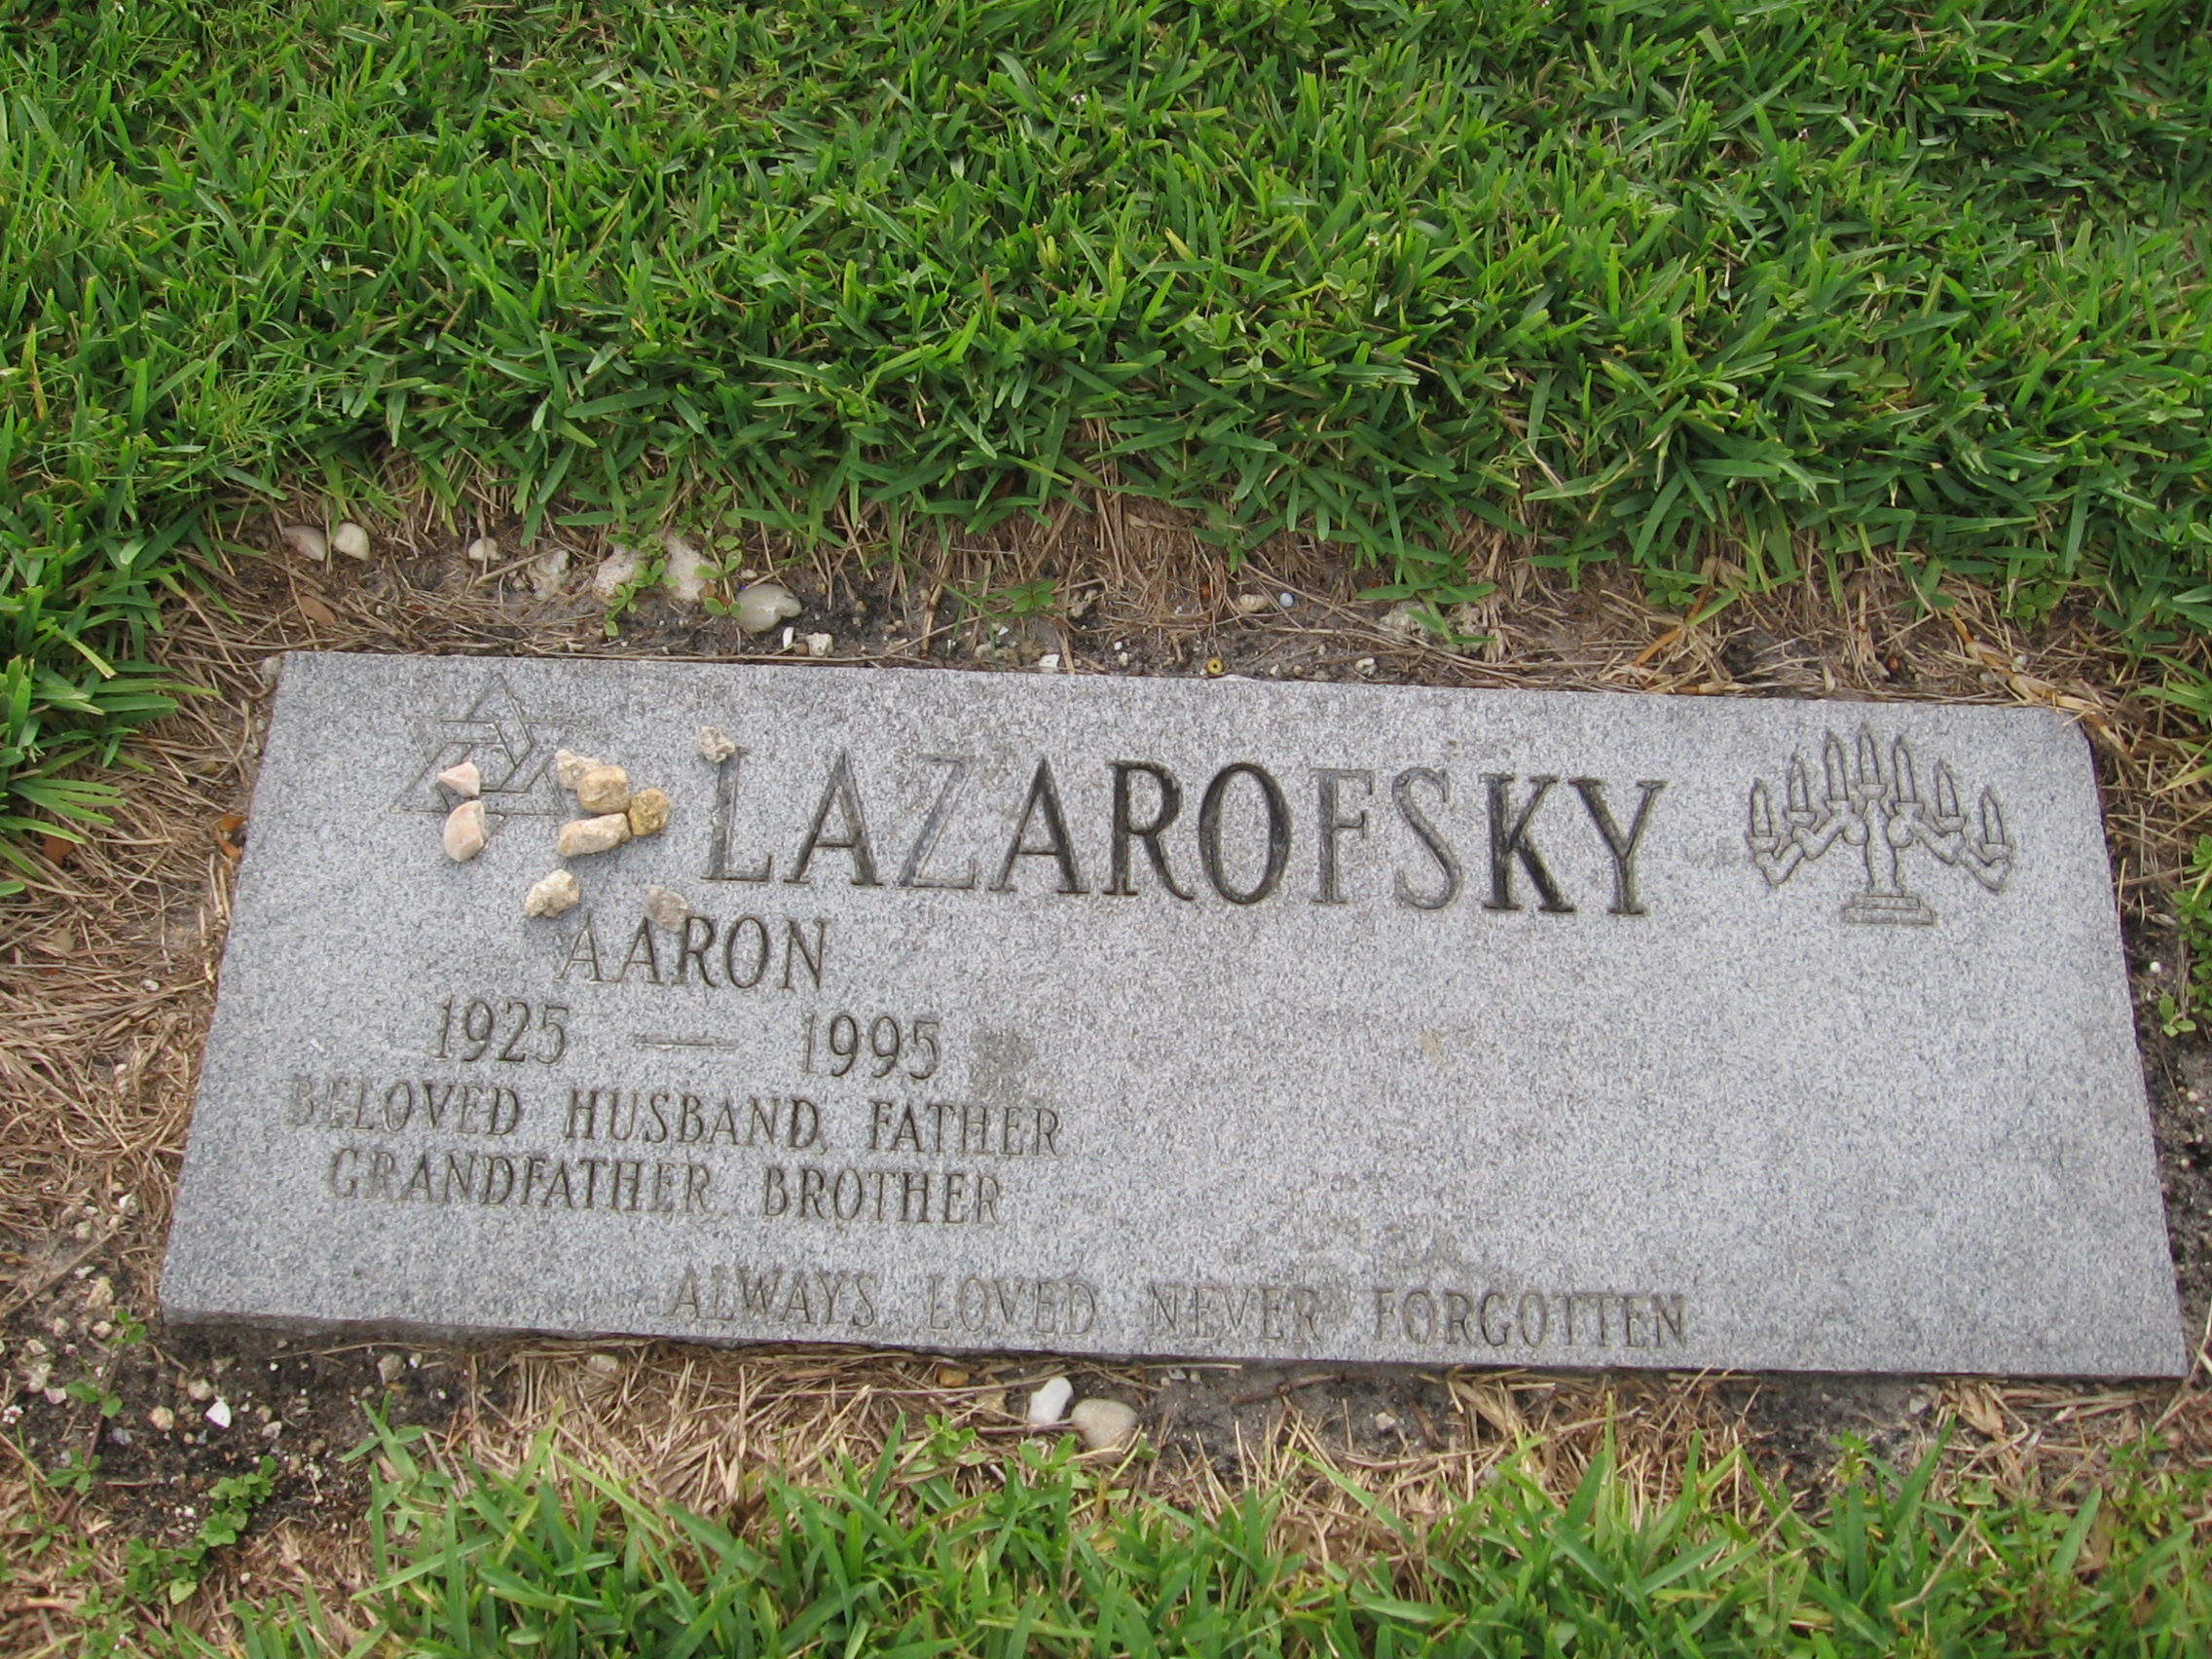 Aaron Lazarofsky